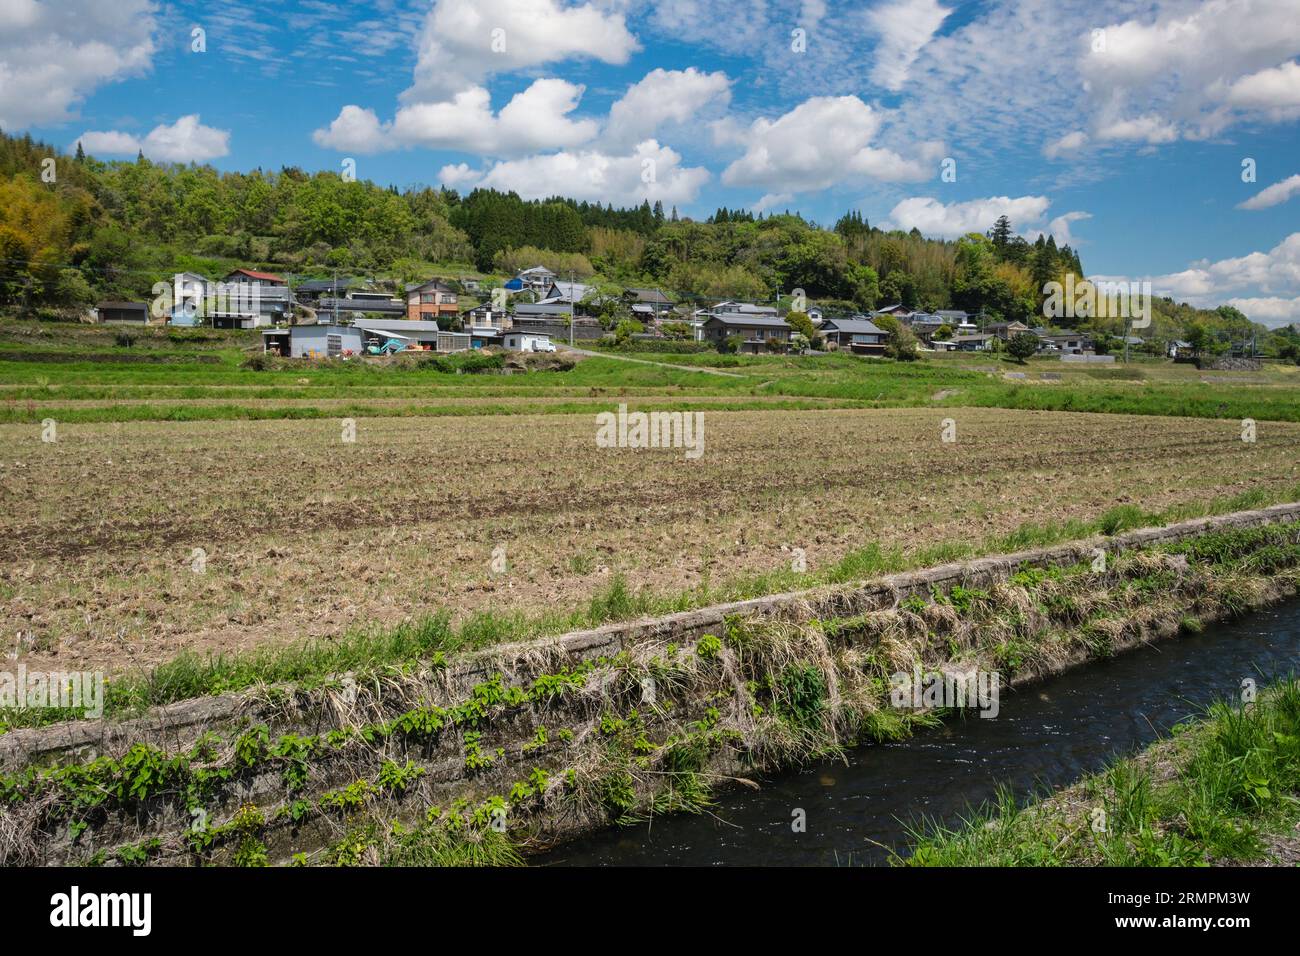 Japan, Kyushu, Bezirk Bungo Ono. Bewässerte landwirtschaftliche Felder und Häuser. Präfektur Oita. Stockfoto